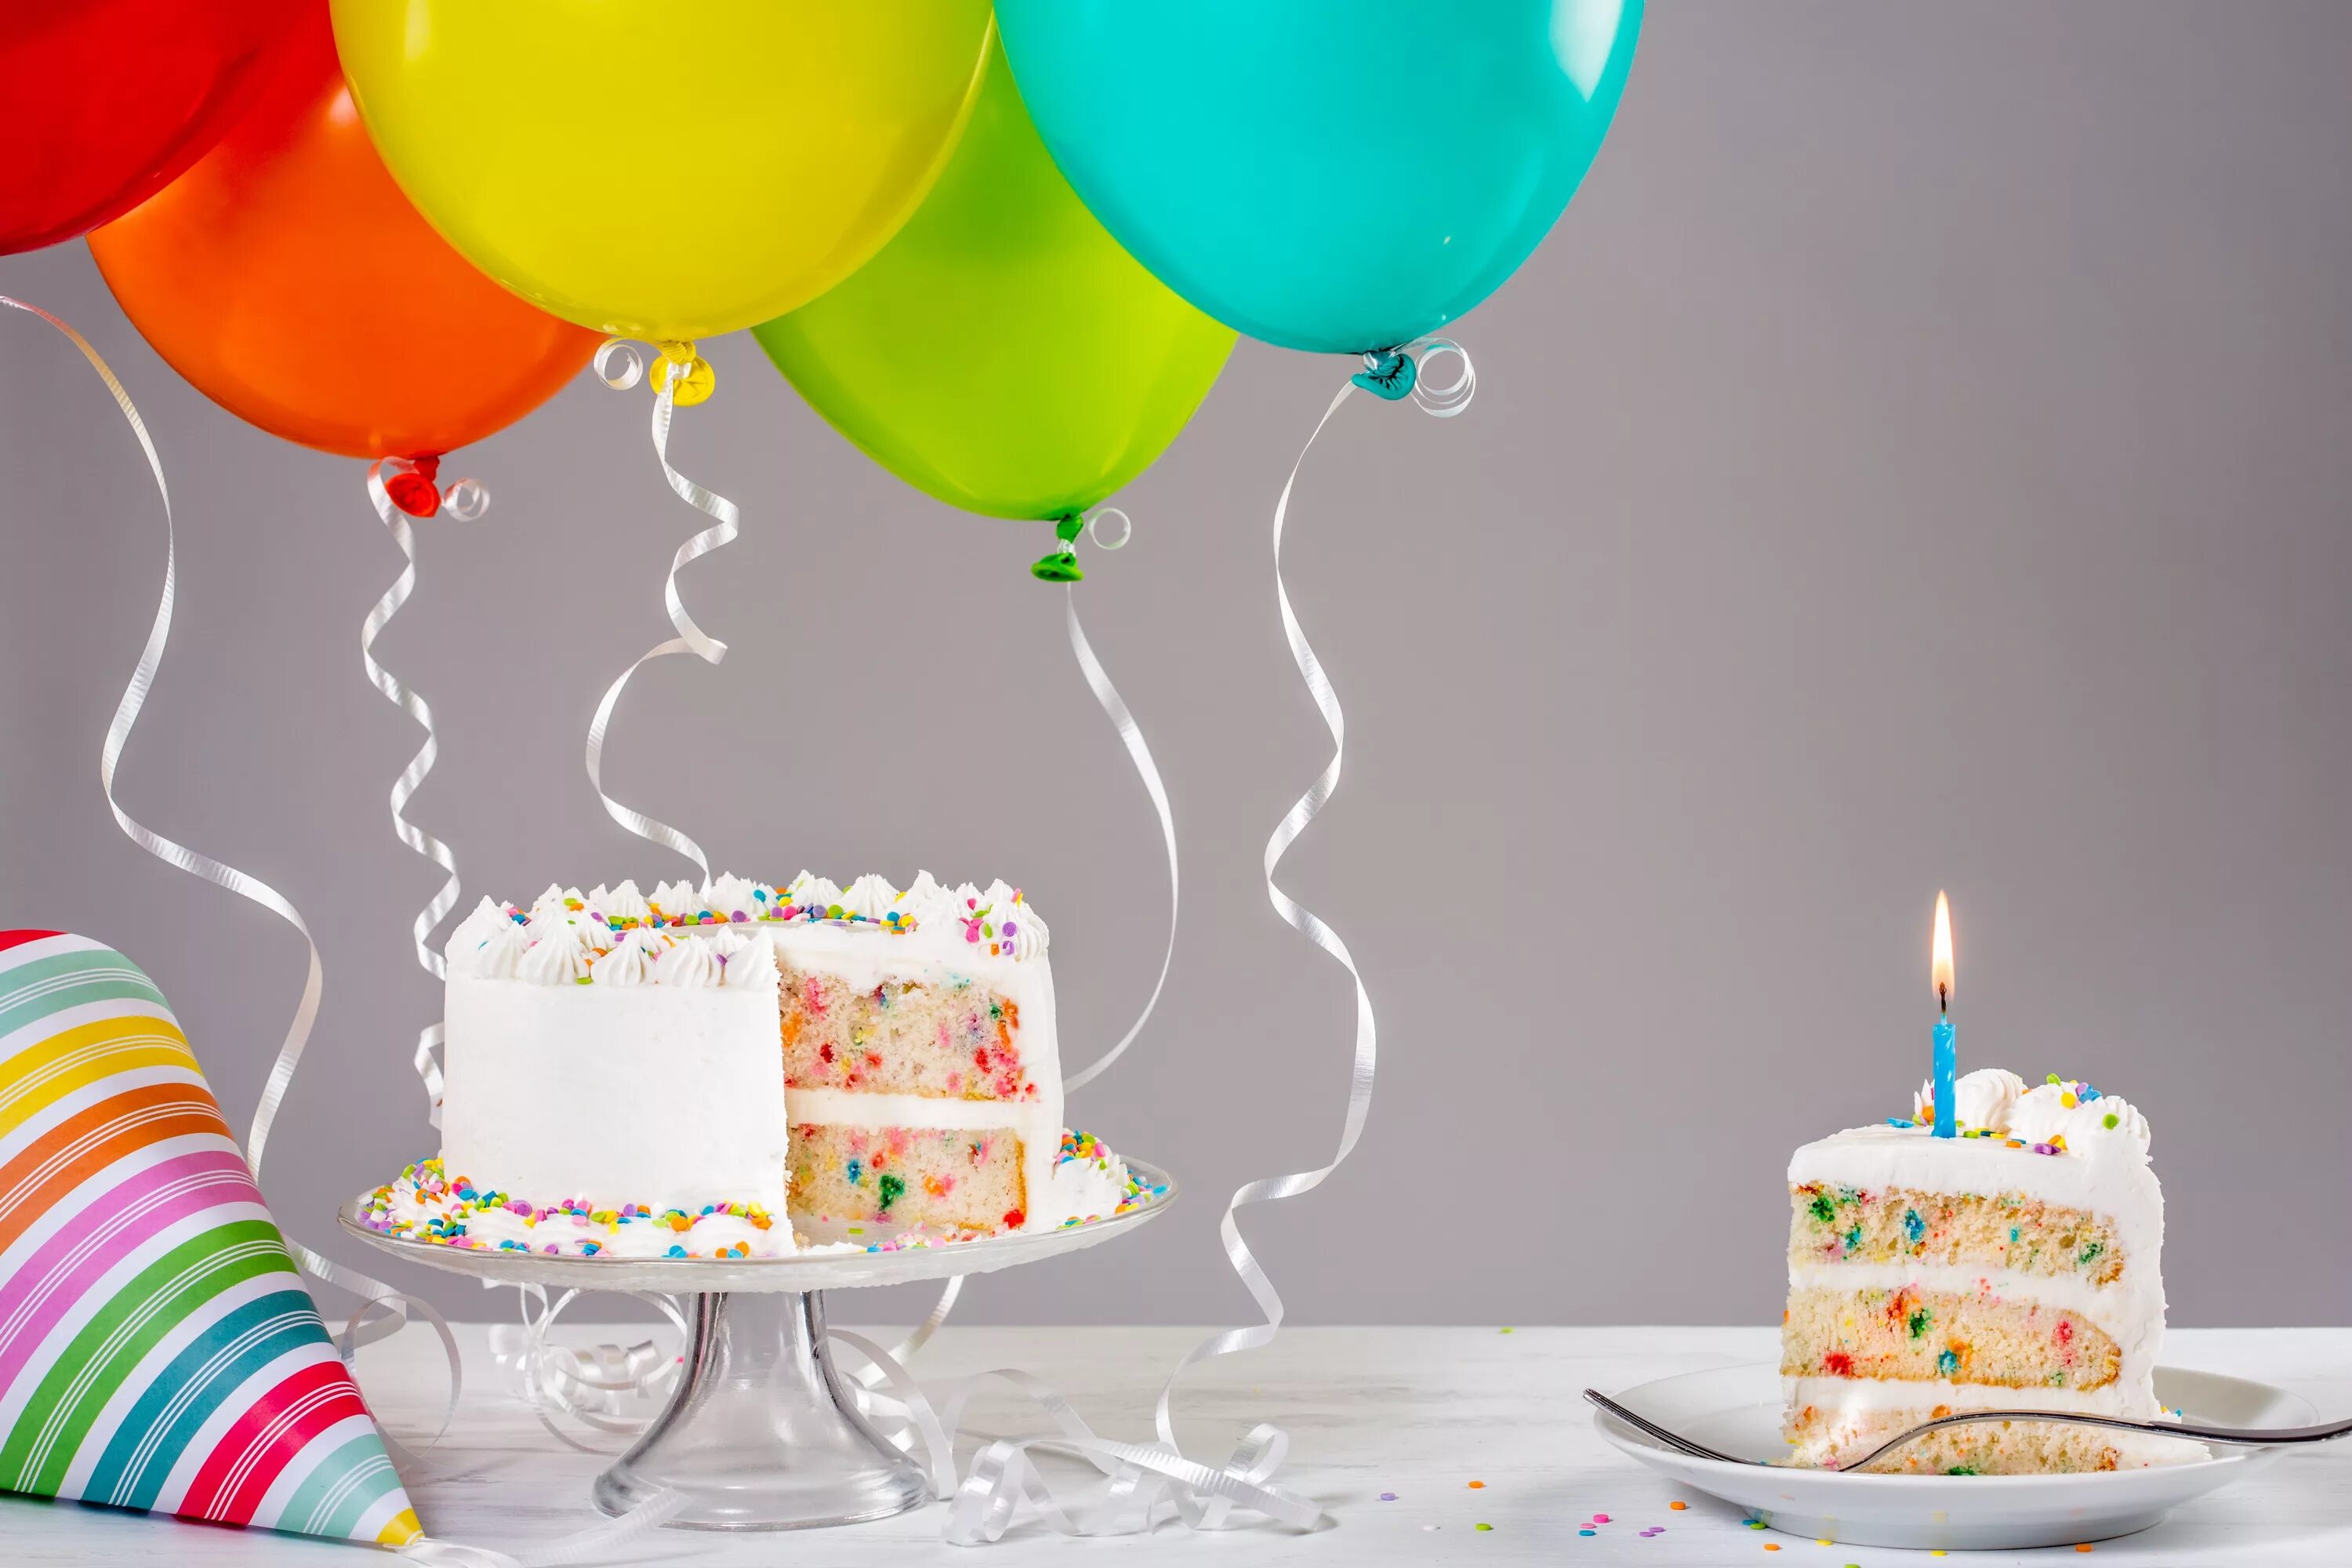 A birthday. С днем рождения. Торт с днем рождения!. Открытки с тортом и шарами. Фон с днем рождения.